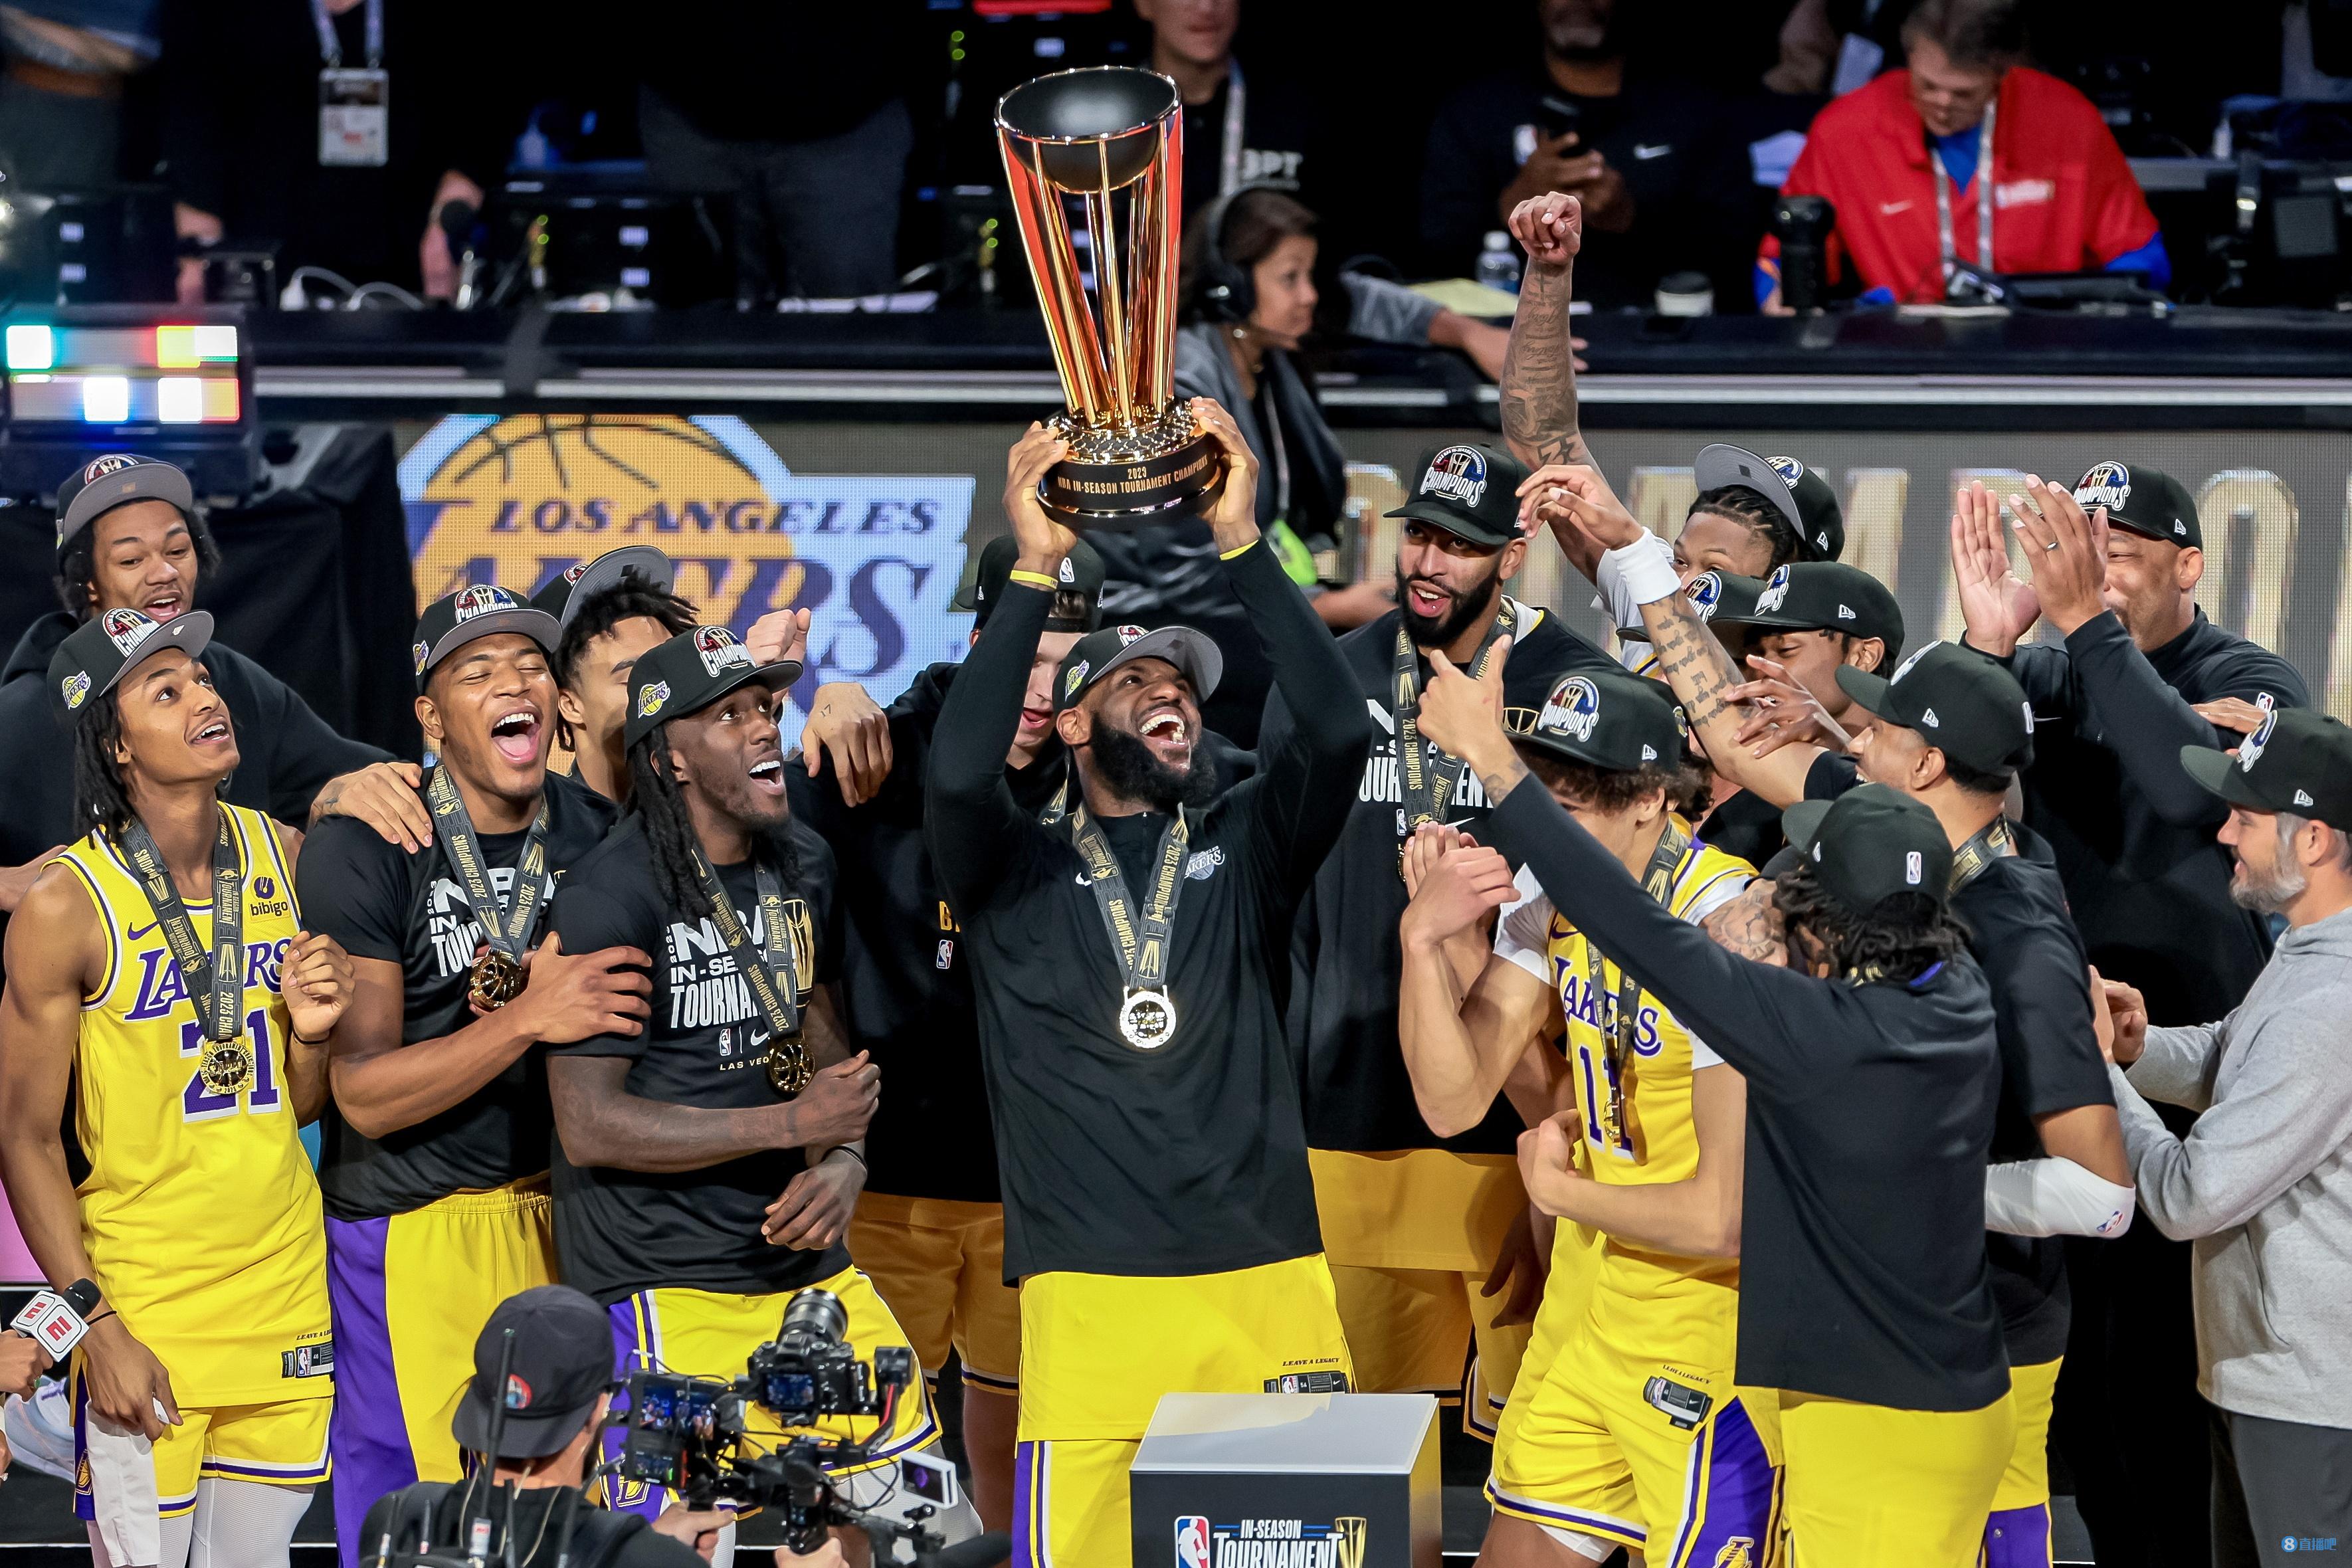 绝版！下赛季起季中锦标赛将更名为“酋长NBA杯” 湖人奖杯不改名